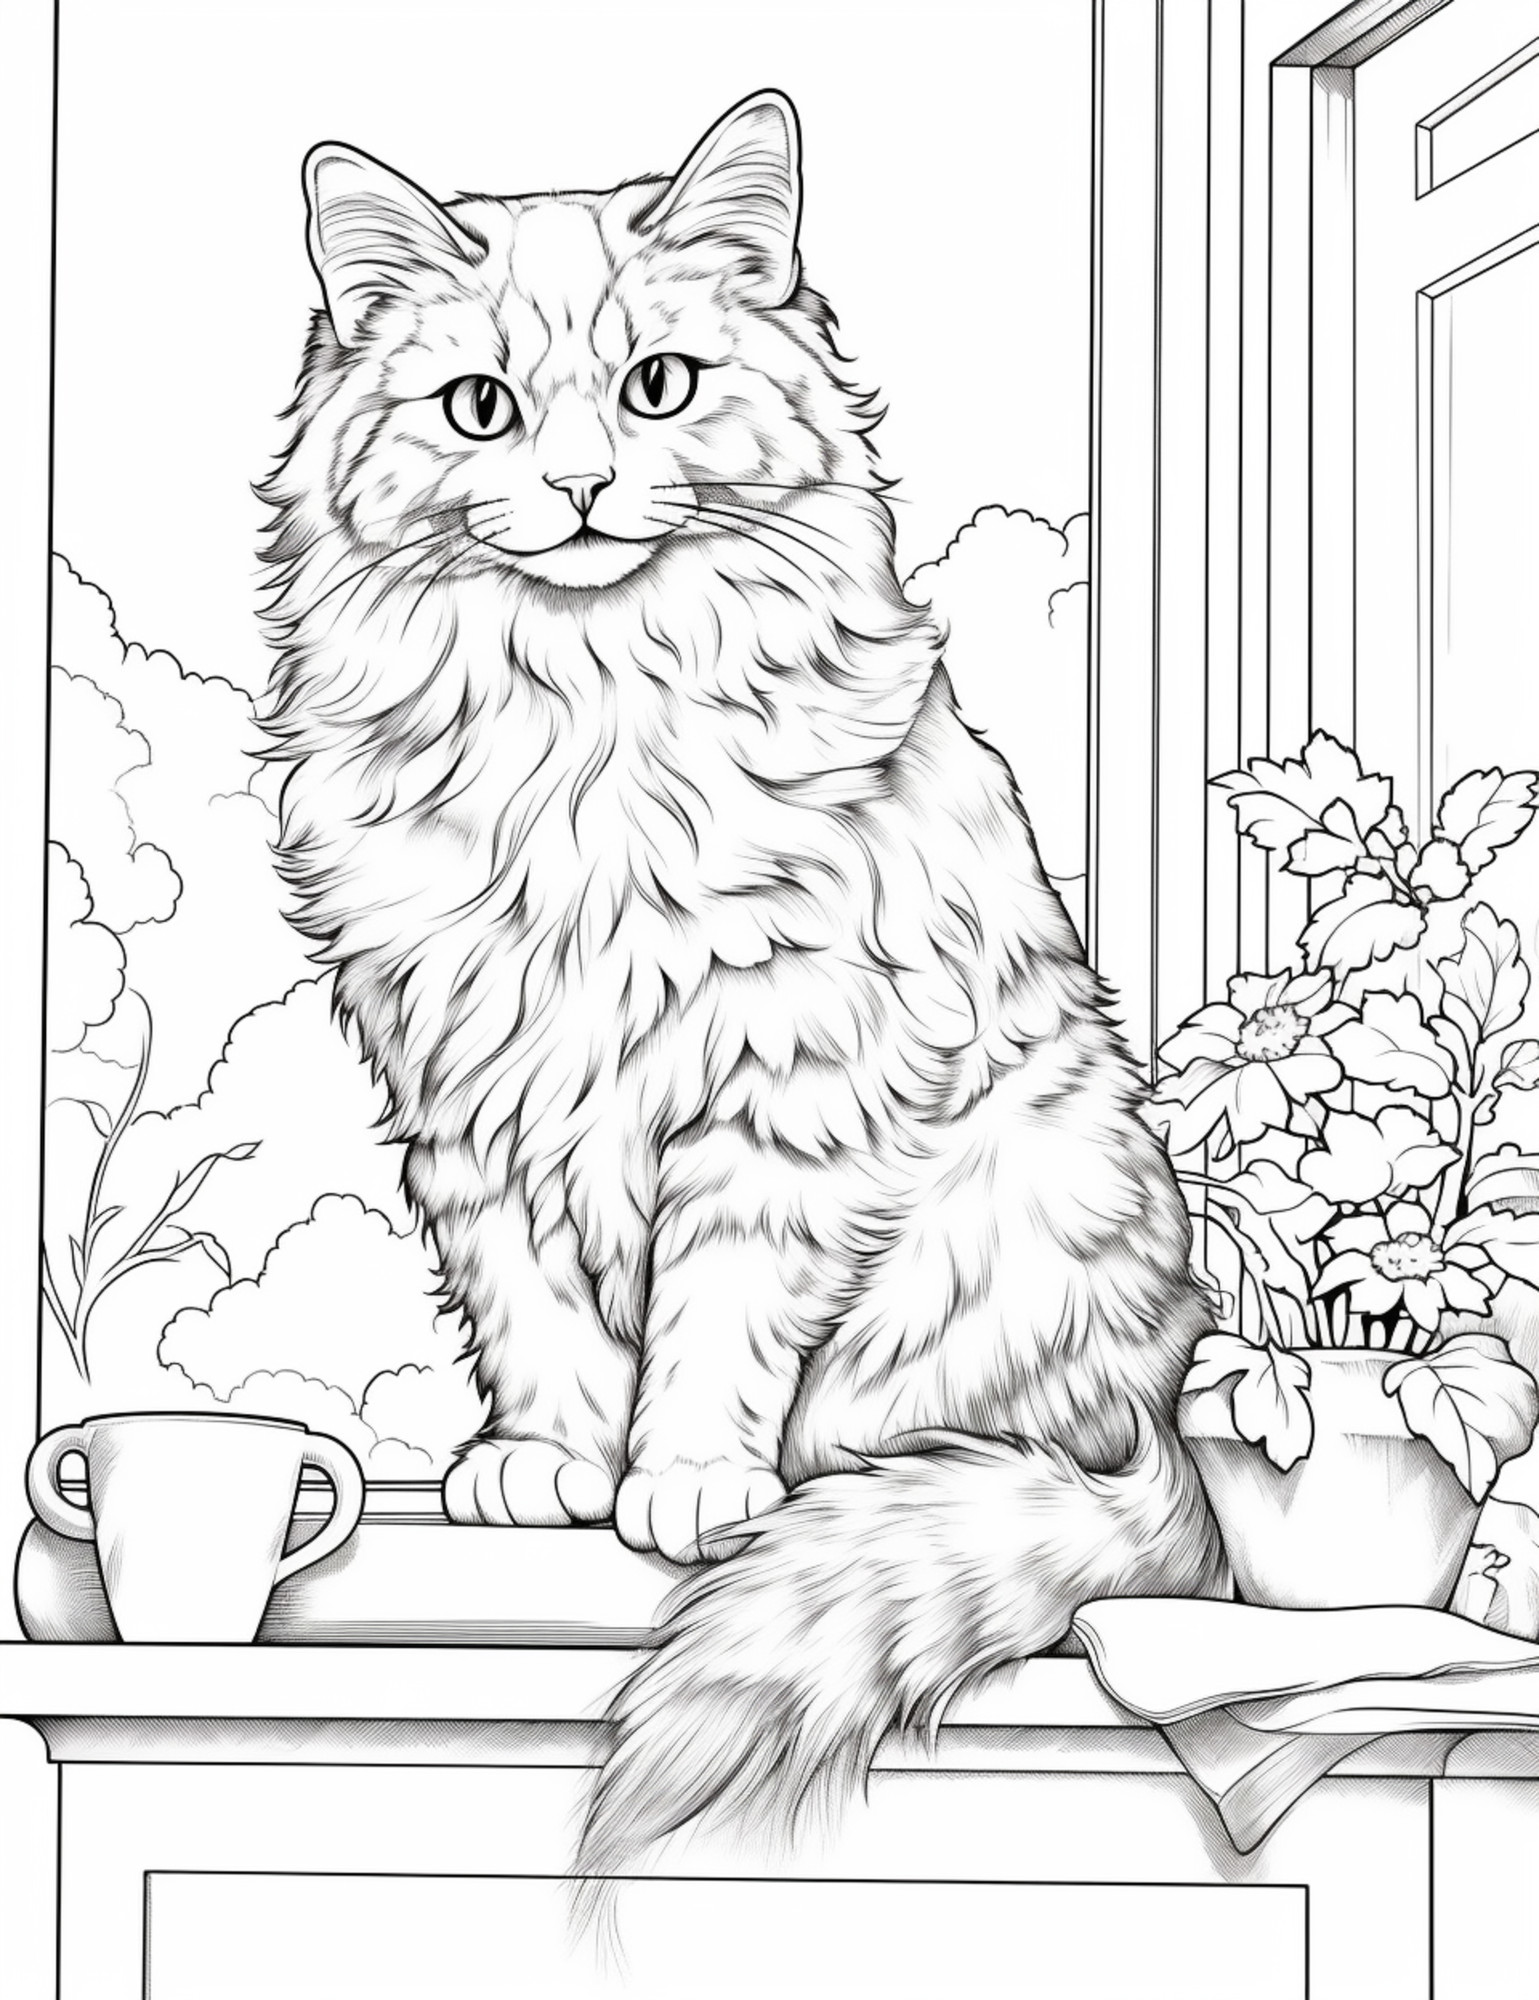 Раскраска для детей: кот сидит на подоконнике рядом с горшком цветов